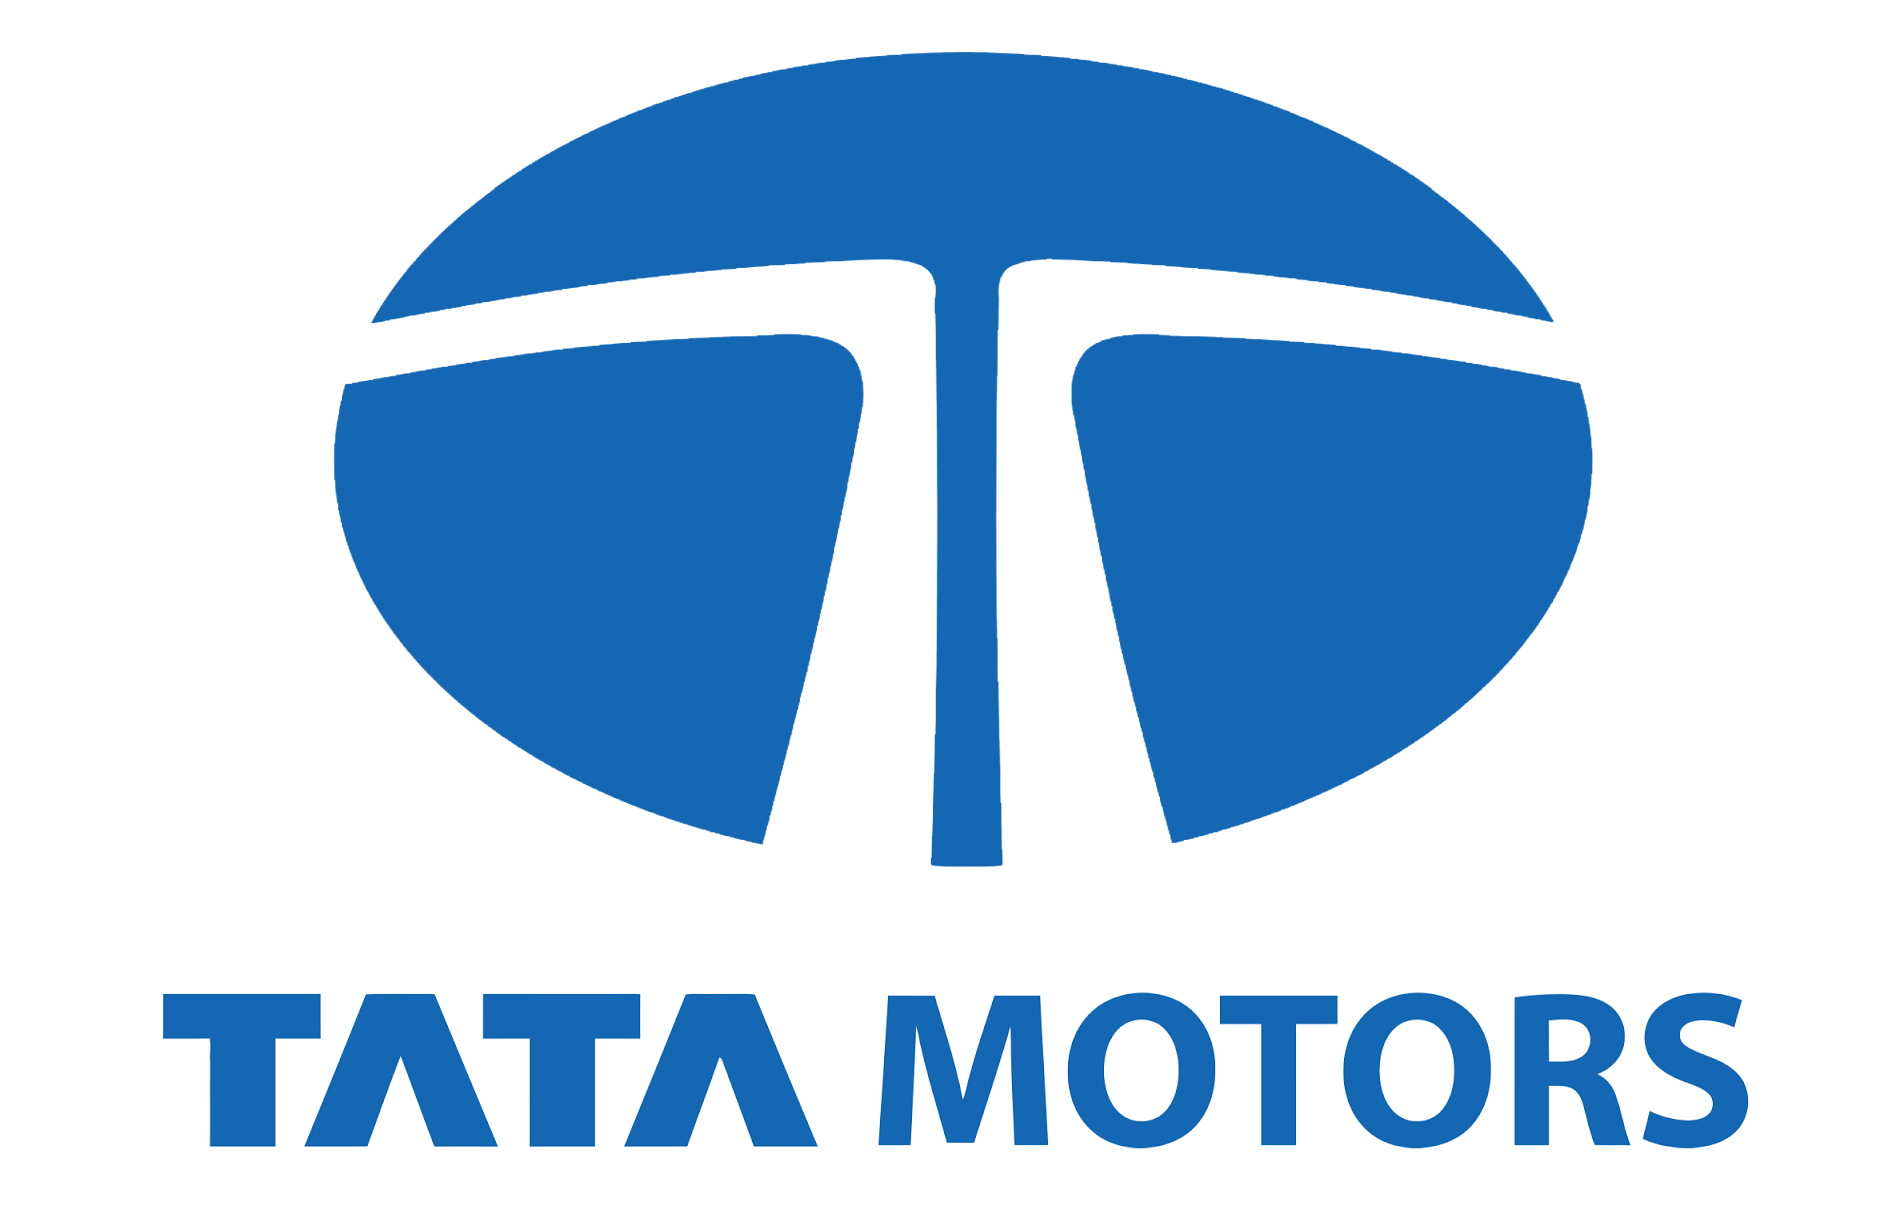 Tata Motors Cars Showroom - Kropex Auto|Repair Services|Automotive